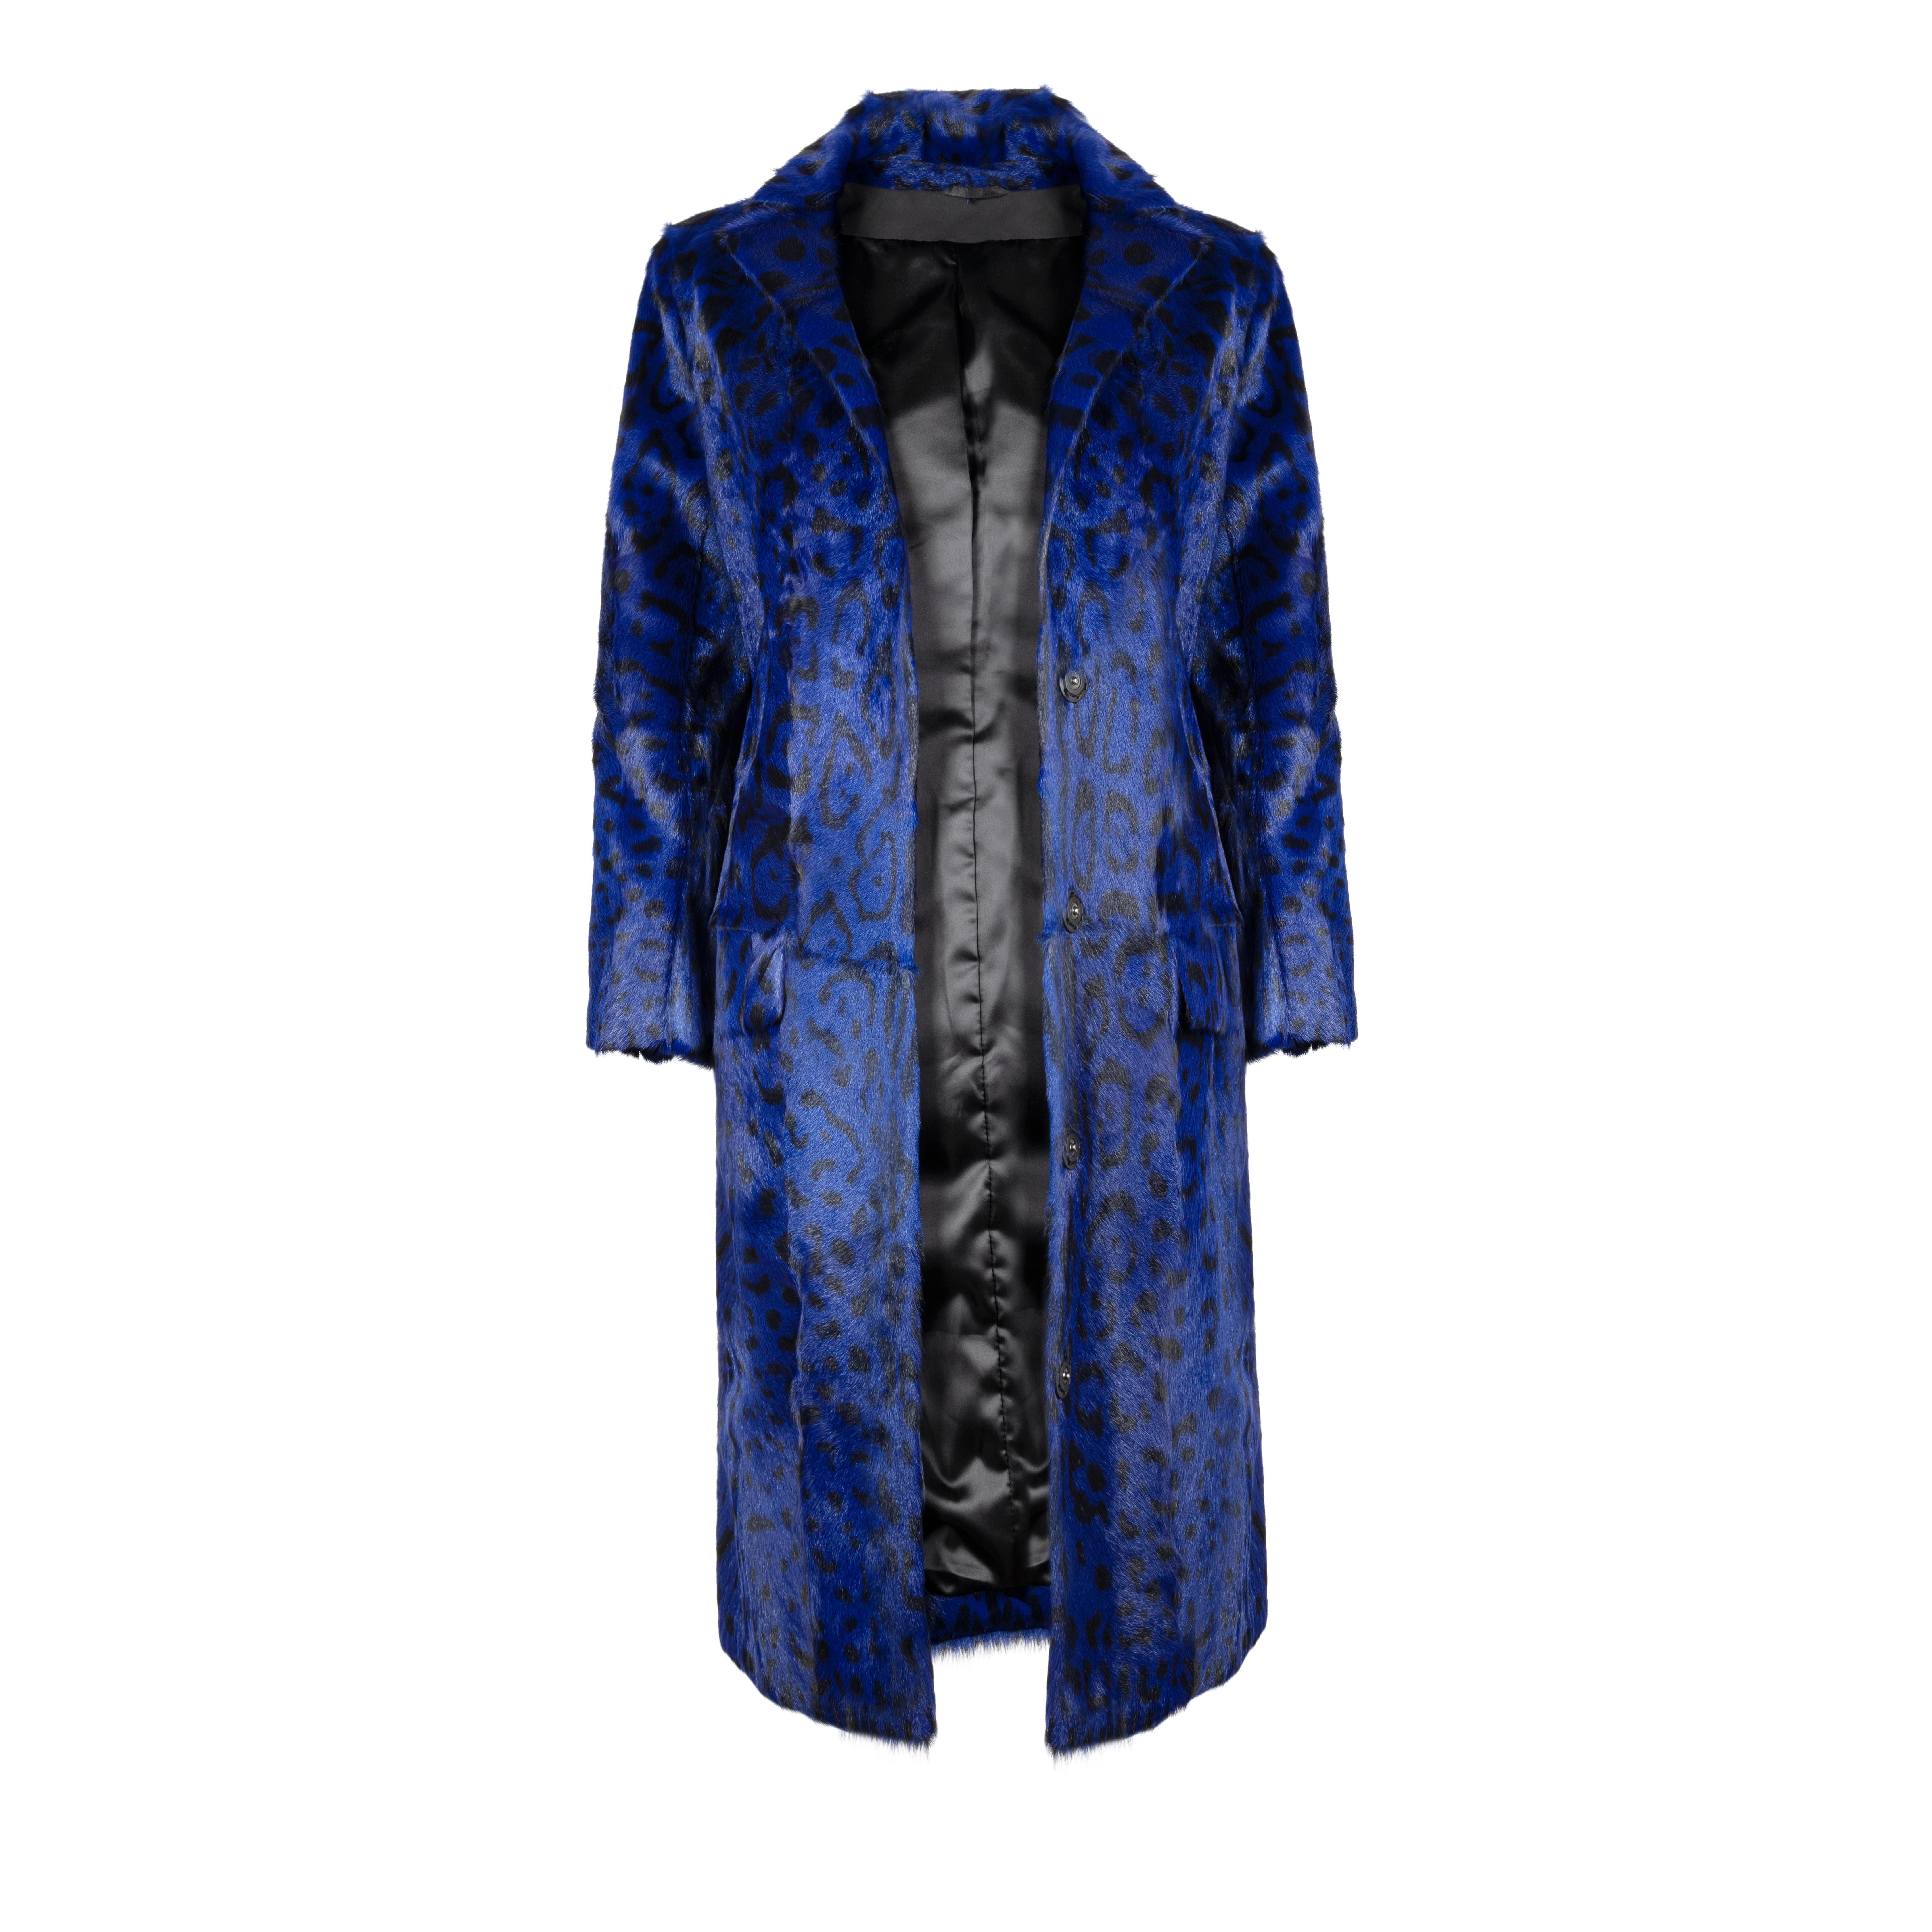 Verheyen London Leopard Print Mantel in Ink Blue Ziegenhaar Pelz - Größe UK 8 

Dieser Mantel mit Leopardenmuster ist der Klassiker von Verheyen London für mühelosen Stil und Glamour.
Ein Mantel, den man sowohl zu Jeans als auch zu einem Kleid